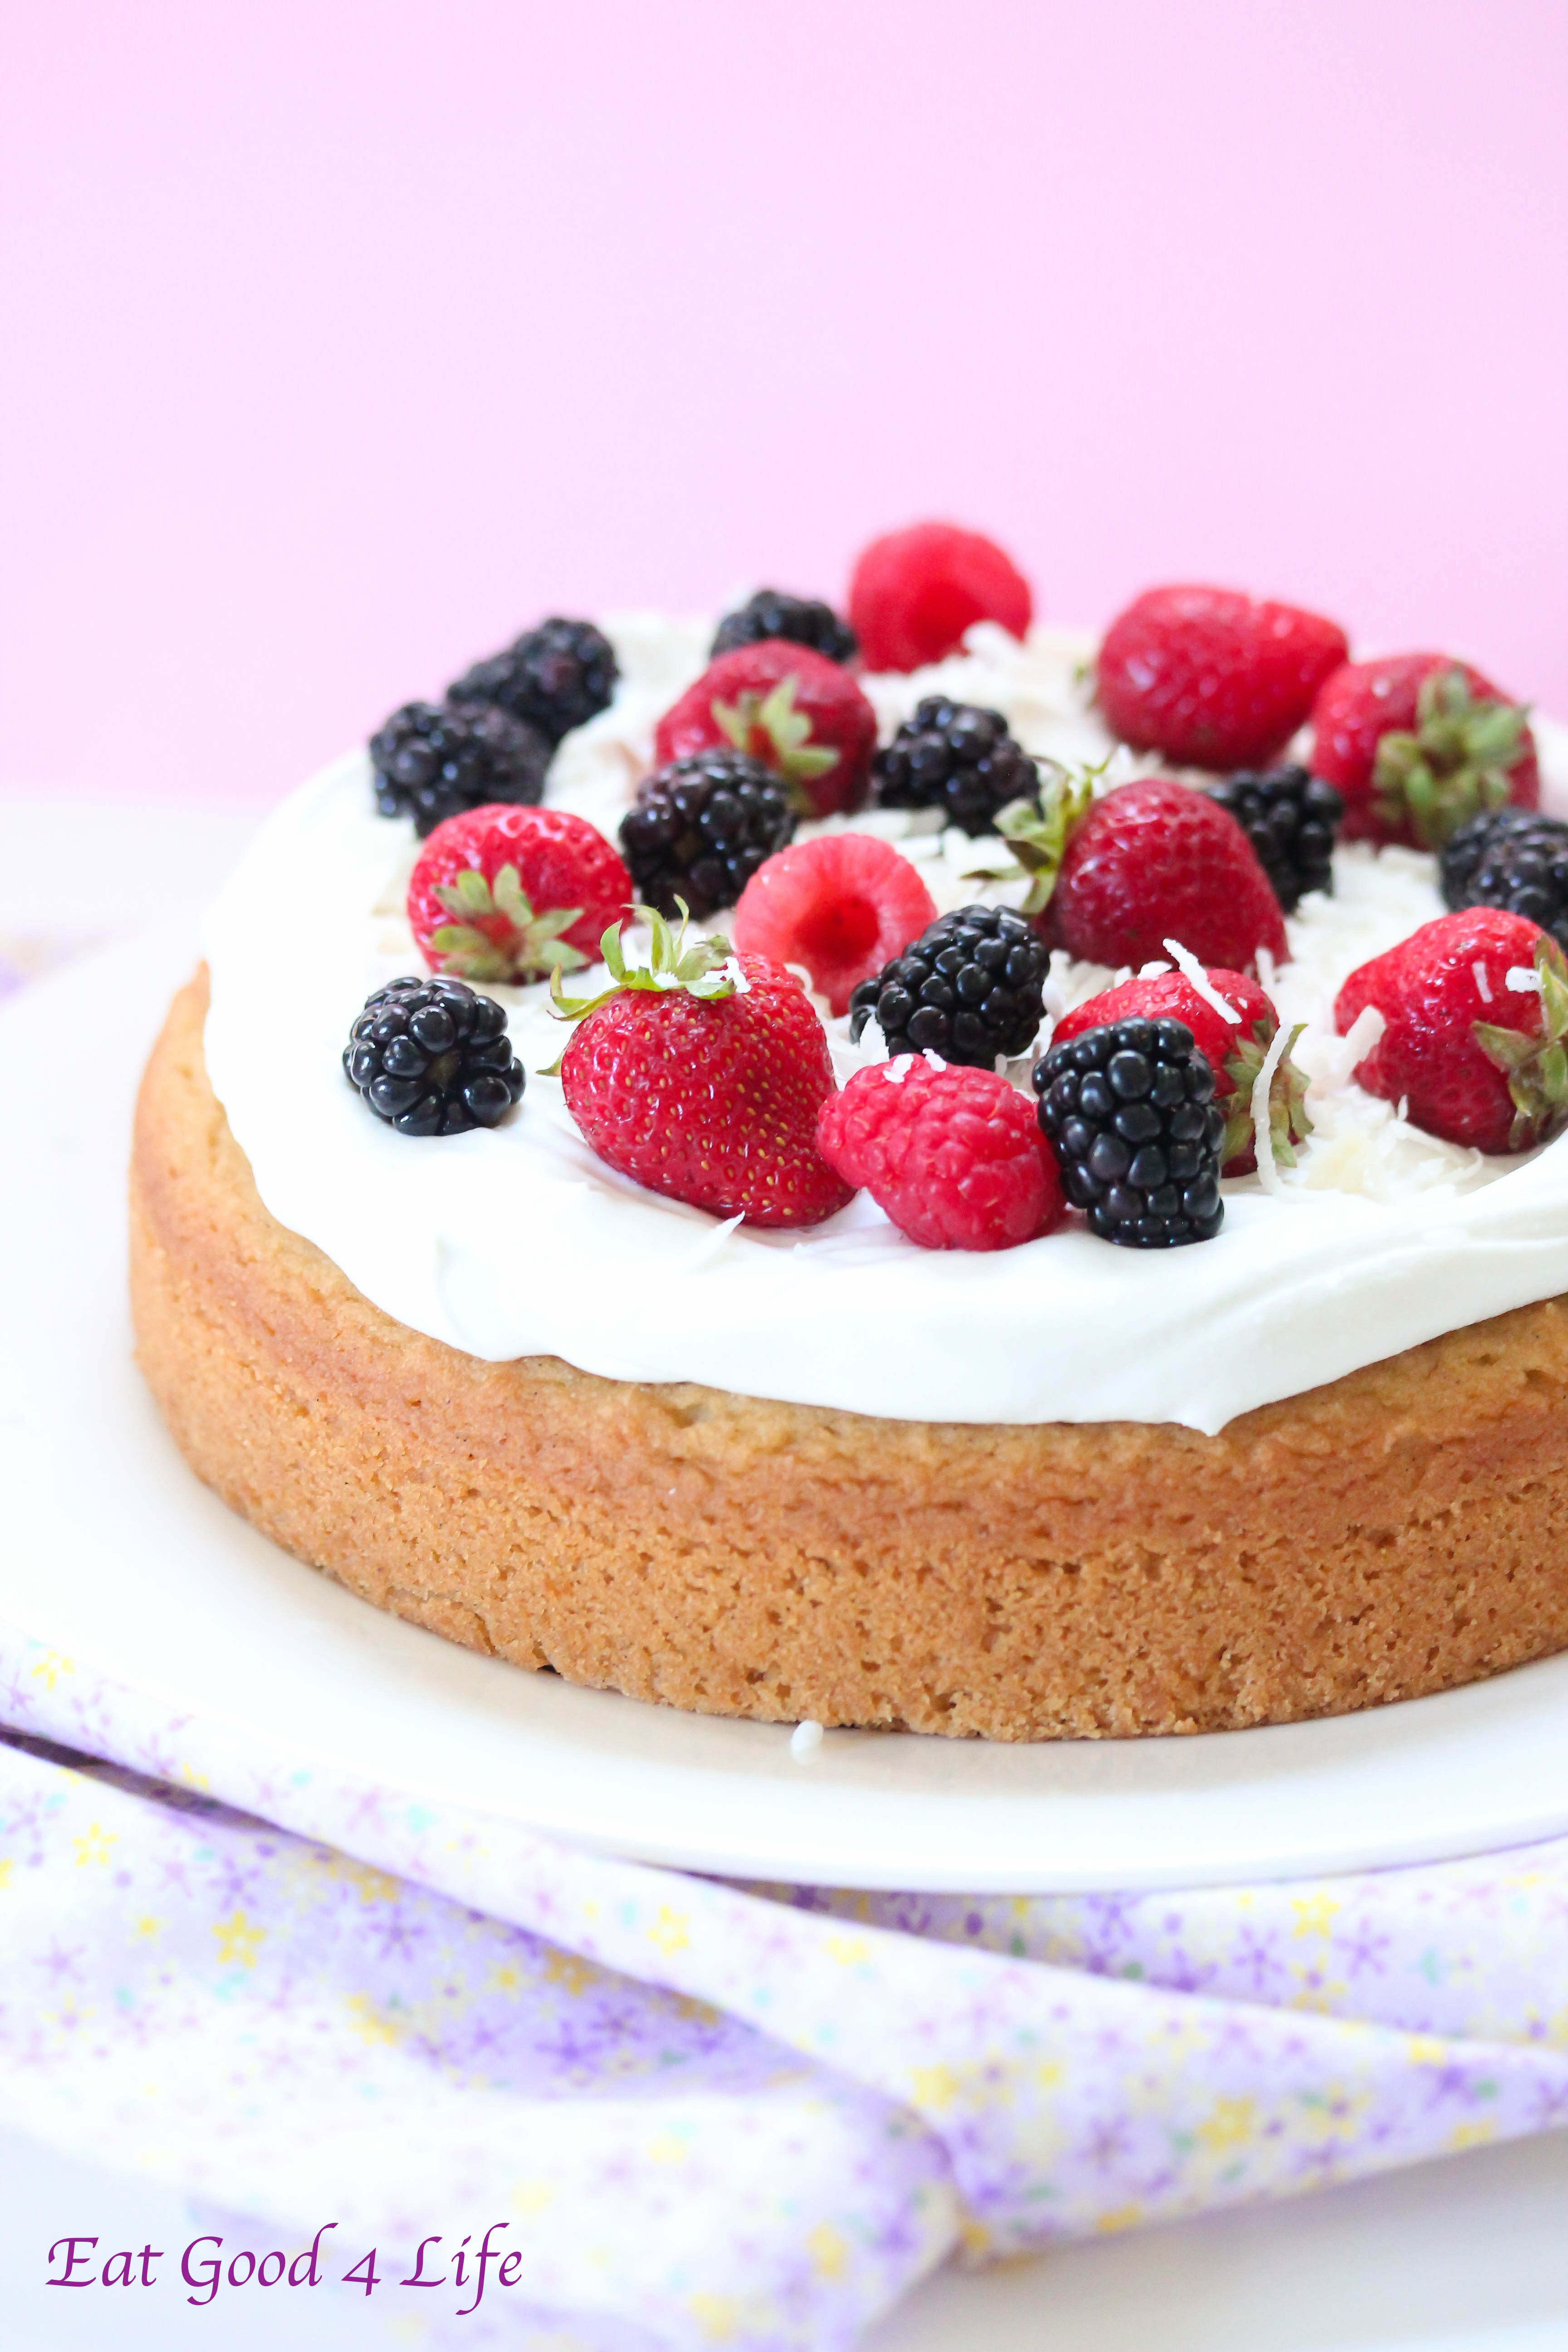 Best ideas about Gluten Free Birthday Cake
. Save or Pin Gluten free vanilla cake Now.